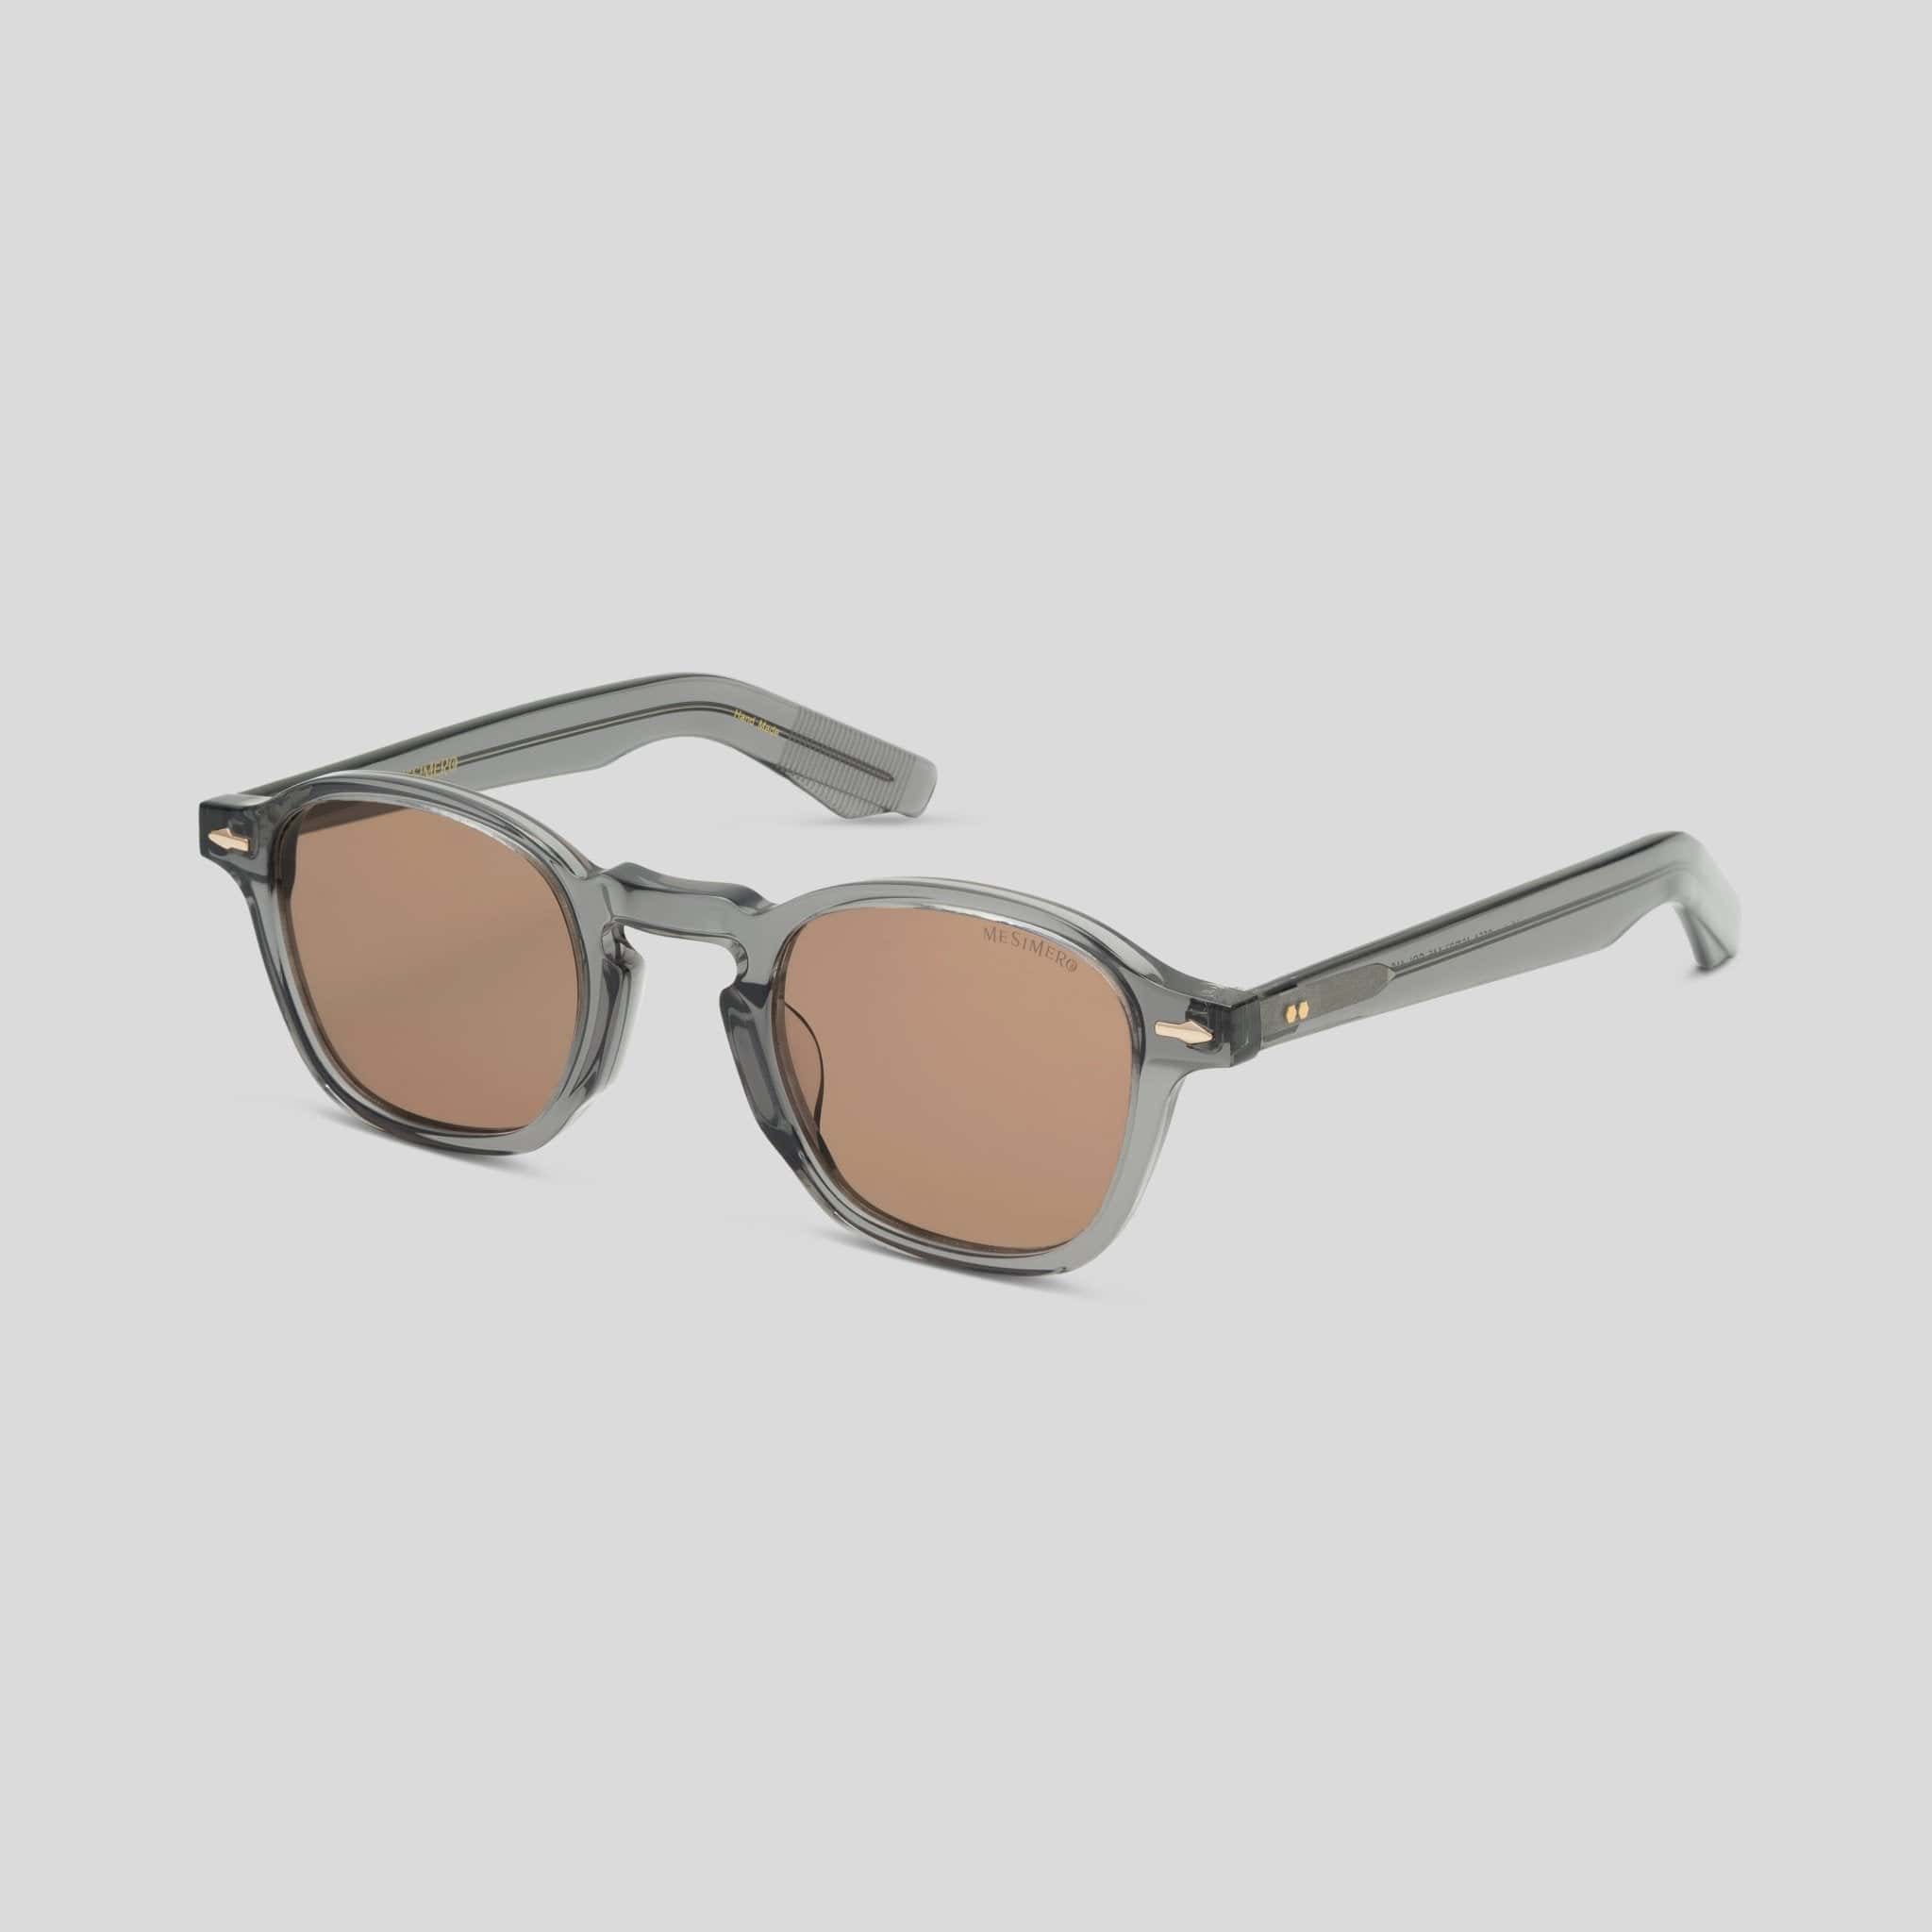 Zero Brown Sunglasses 3